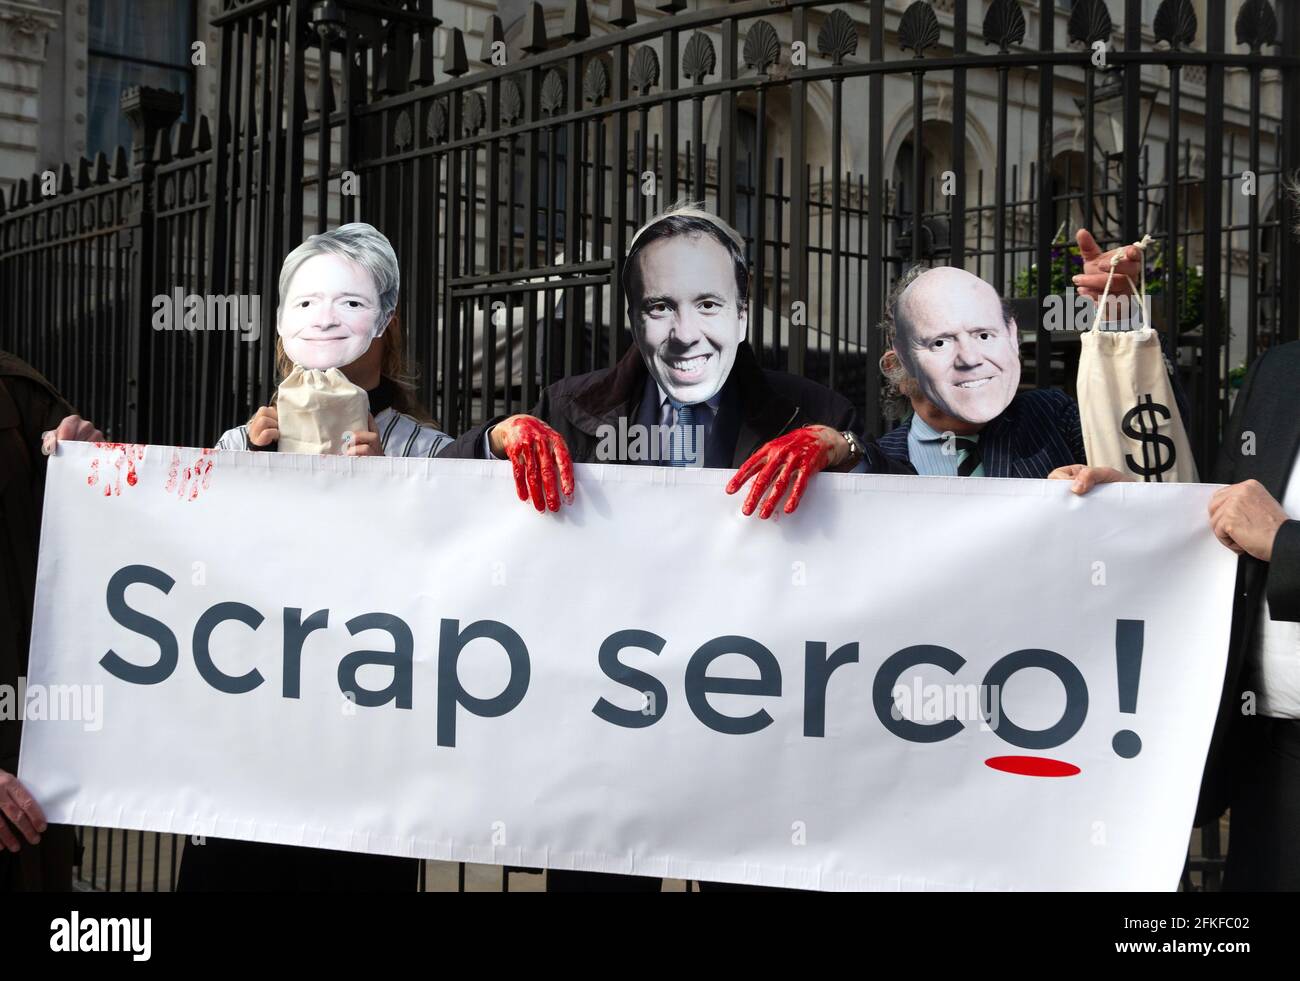 Eine Demonstration in der Downing Street, bei der die Regierung aufgefordert wird, „Serco zu verschropfen“. Serco wurde wegen Betrugs und falscher Buchführung angeklagt, da die Gewinne steigen. Stockfoto